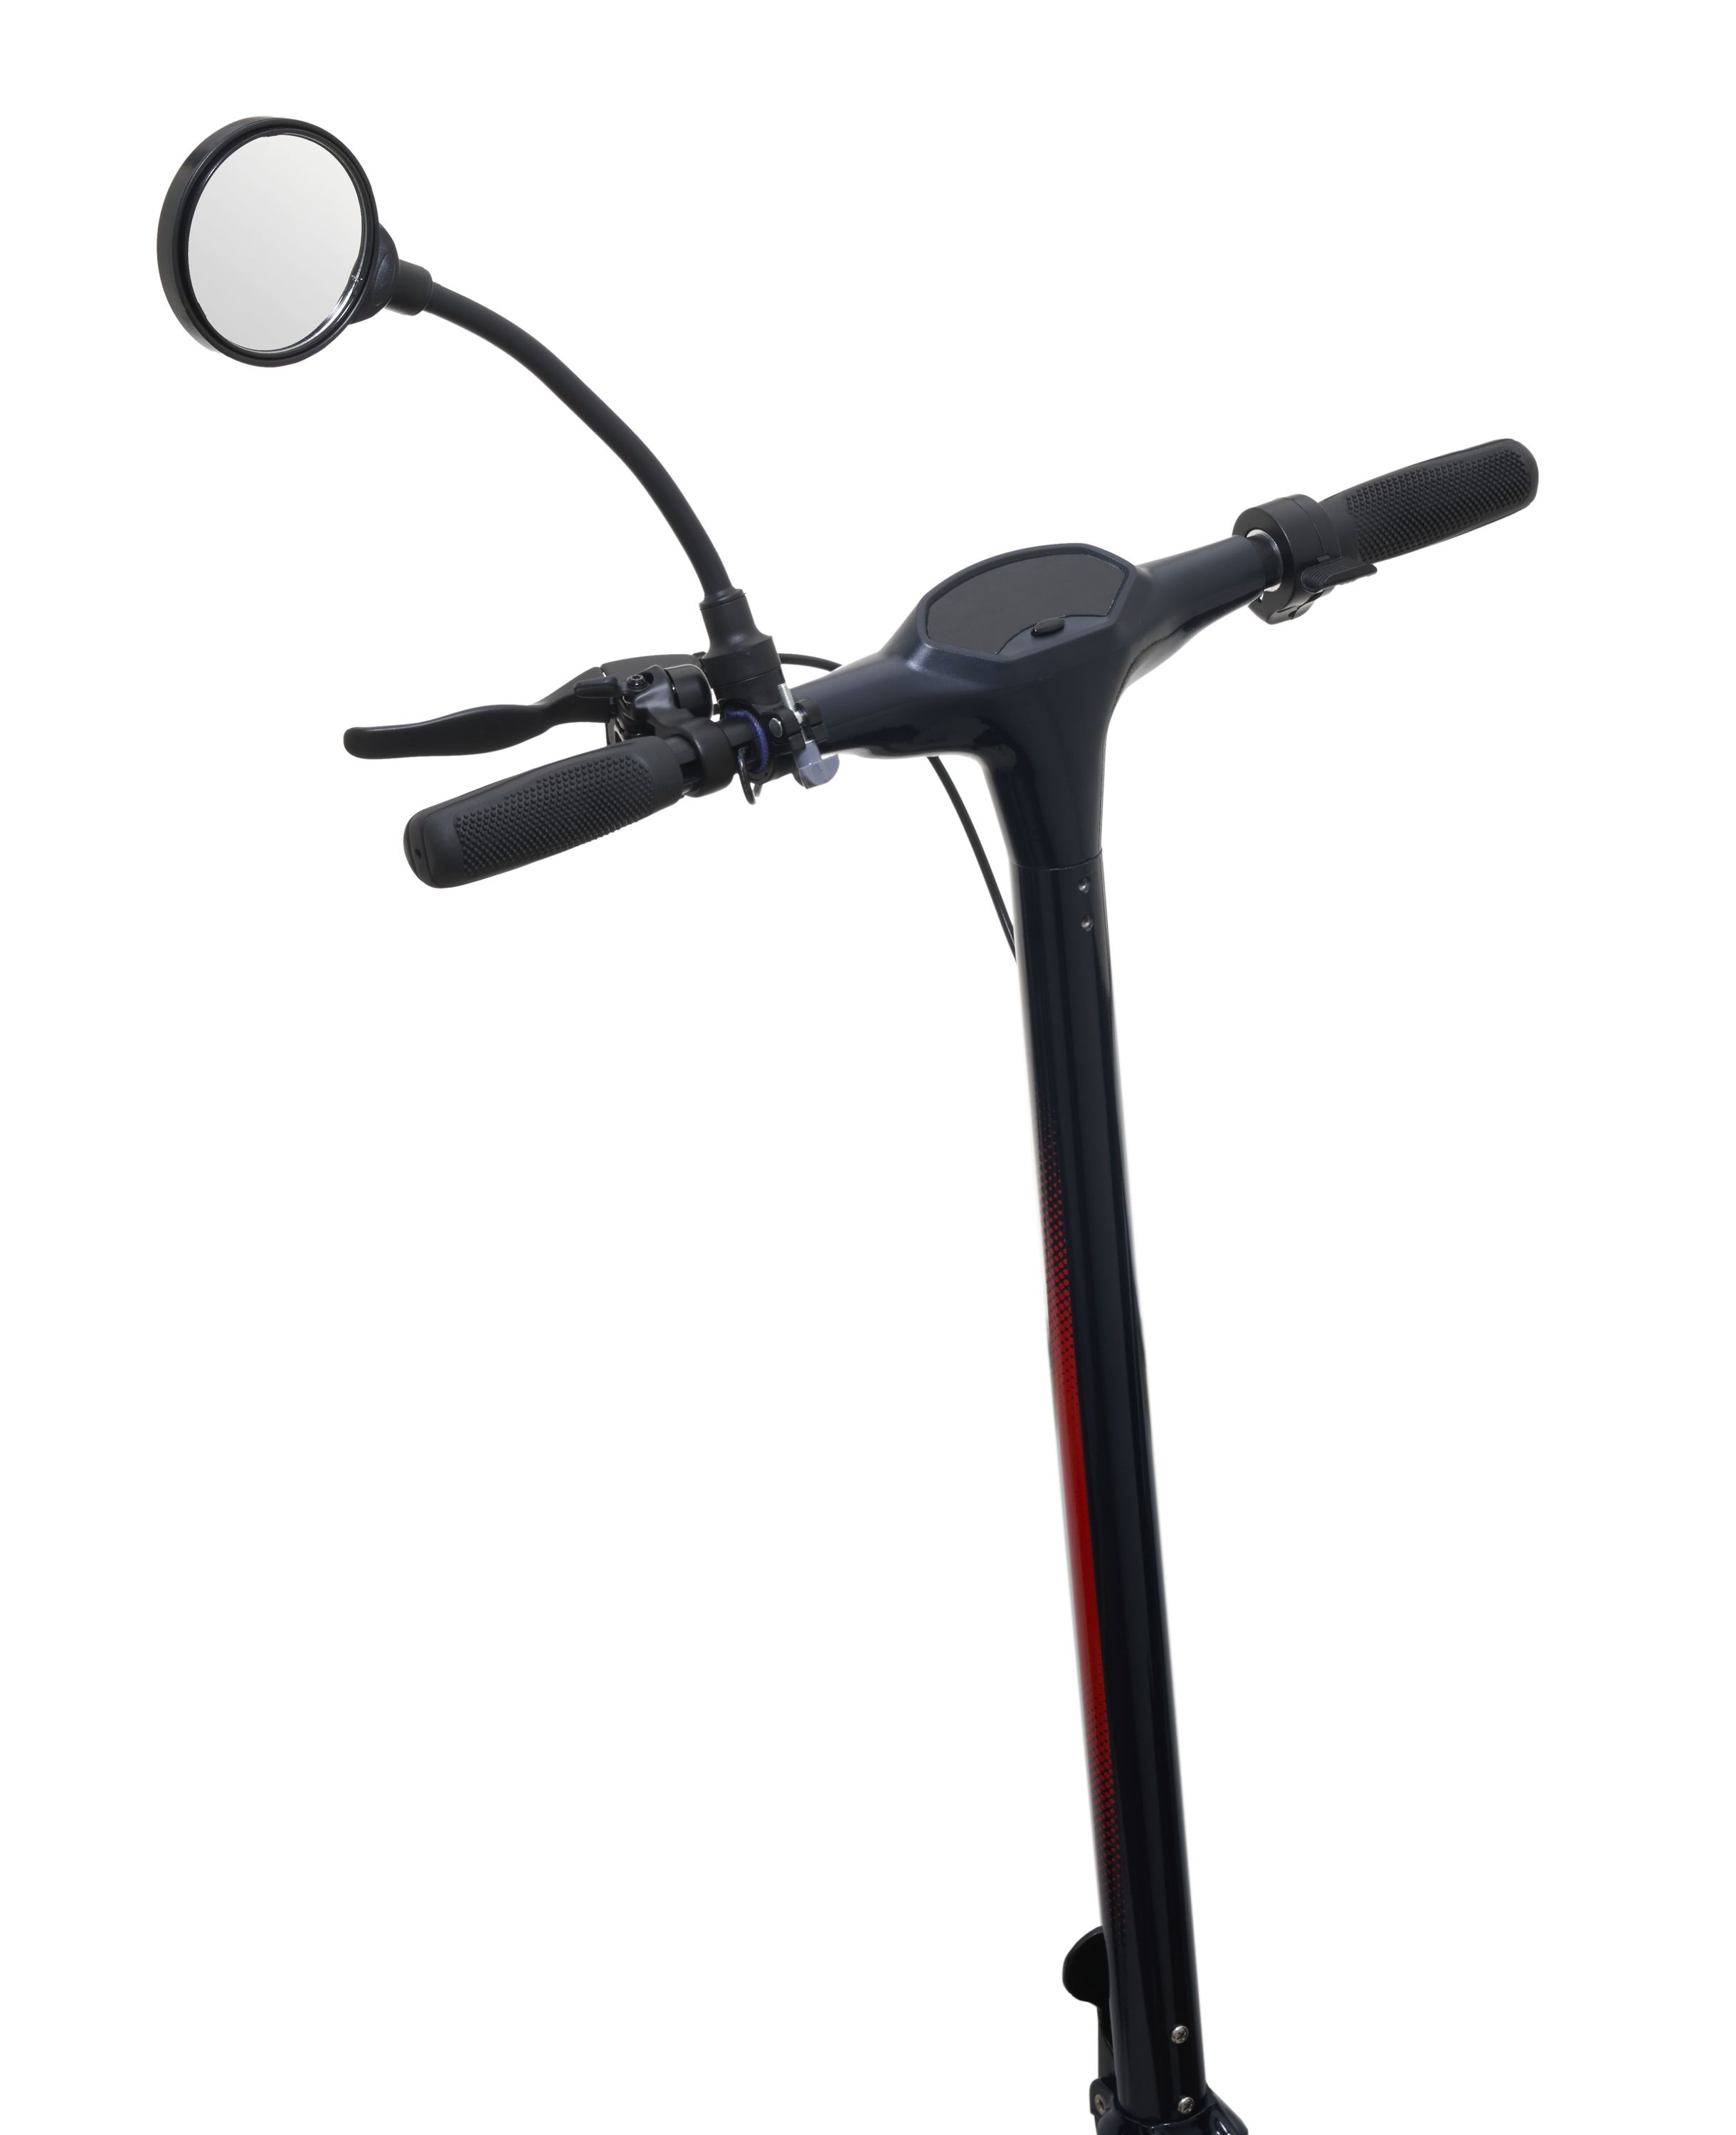 Rückspiegel für Fahrräder und E-Scooter Newbran